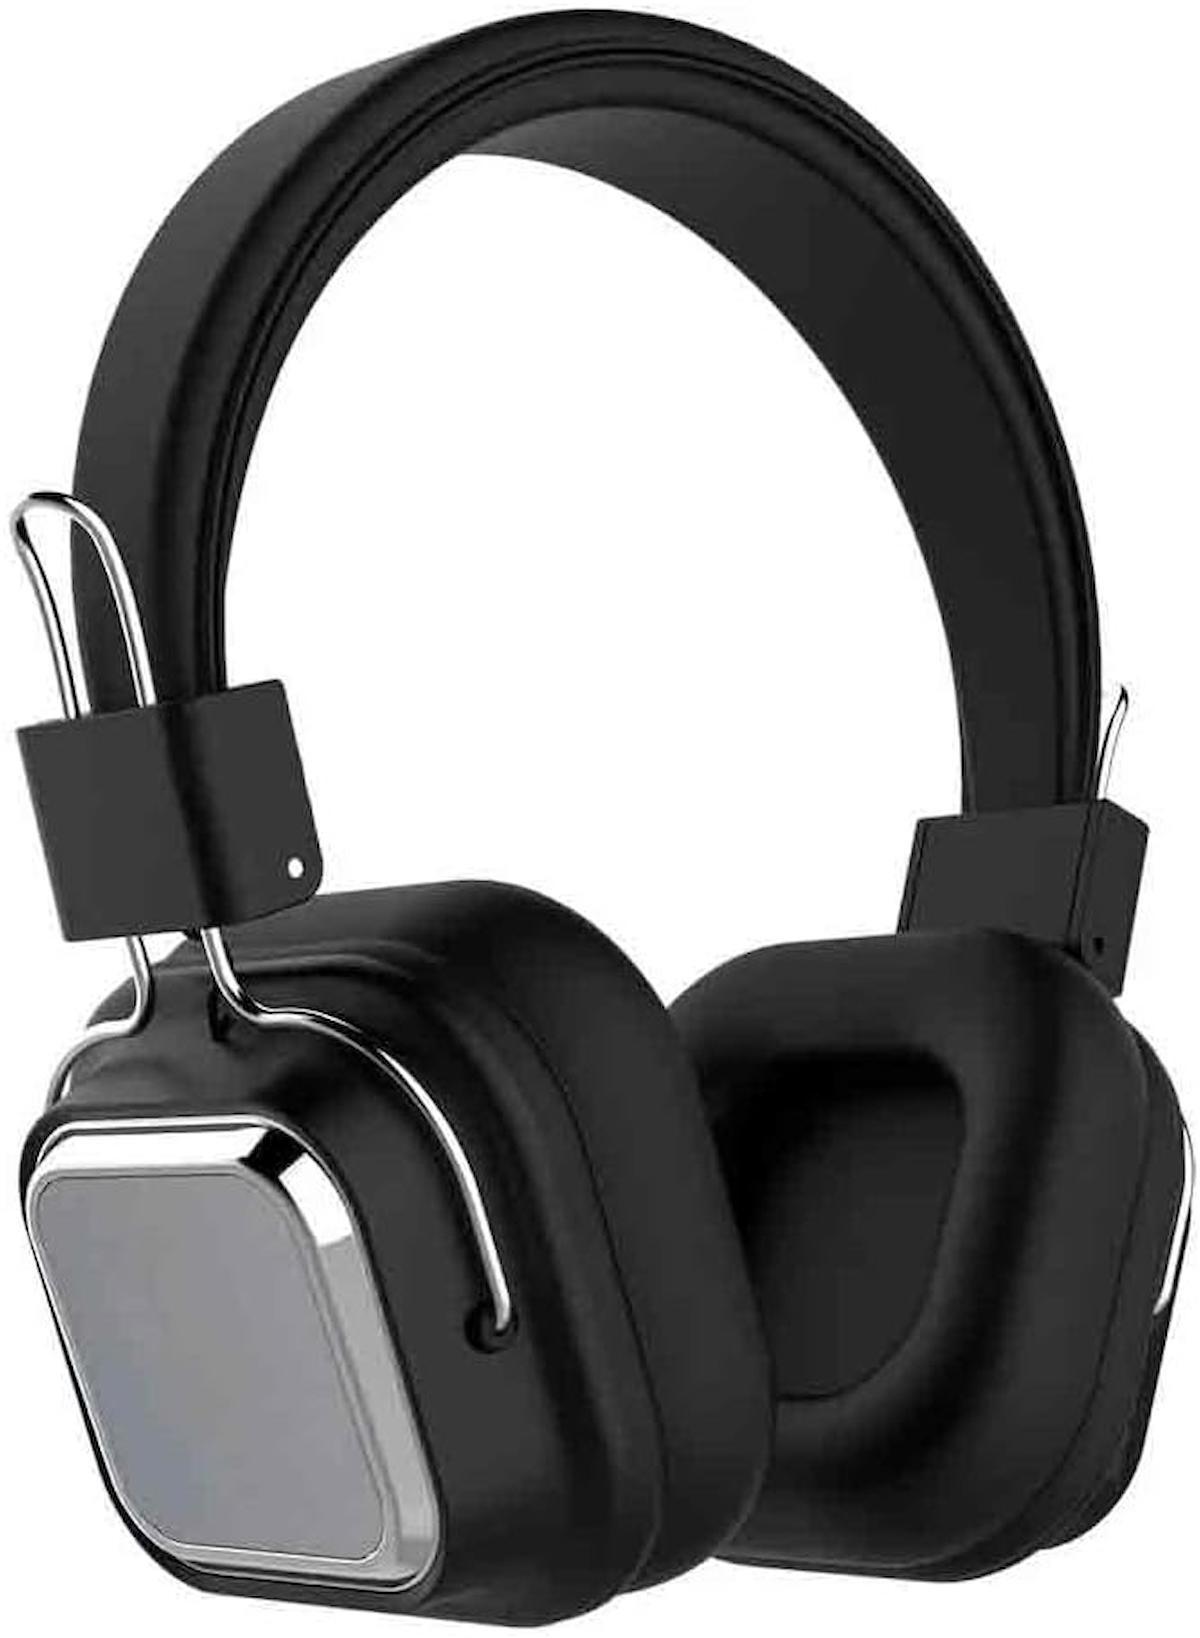 Mikrofonlu Bluetooth 5.0 Kablosuz Kulak Üstü Kulaklık Gürültü Engelleme Özelliği Sporda Doğada Evde Rahat Kullanım Siyah Renk F1003